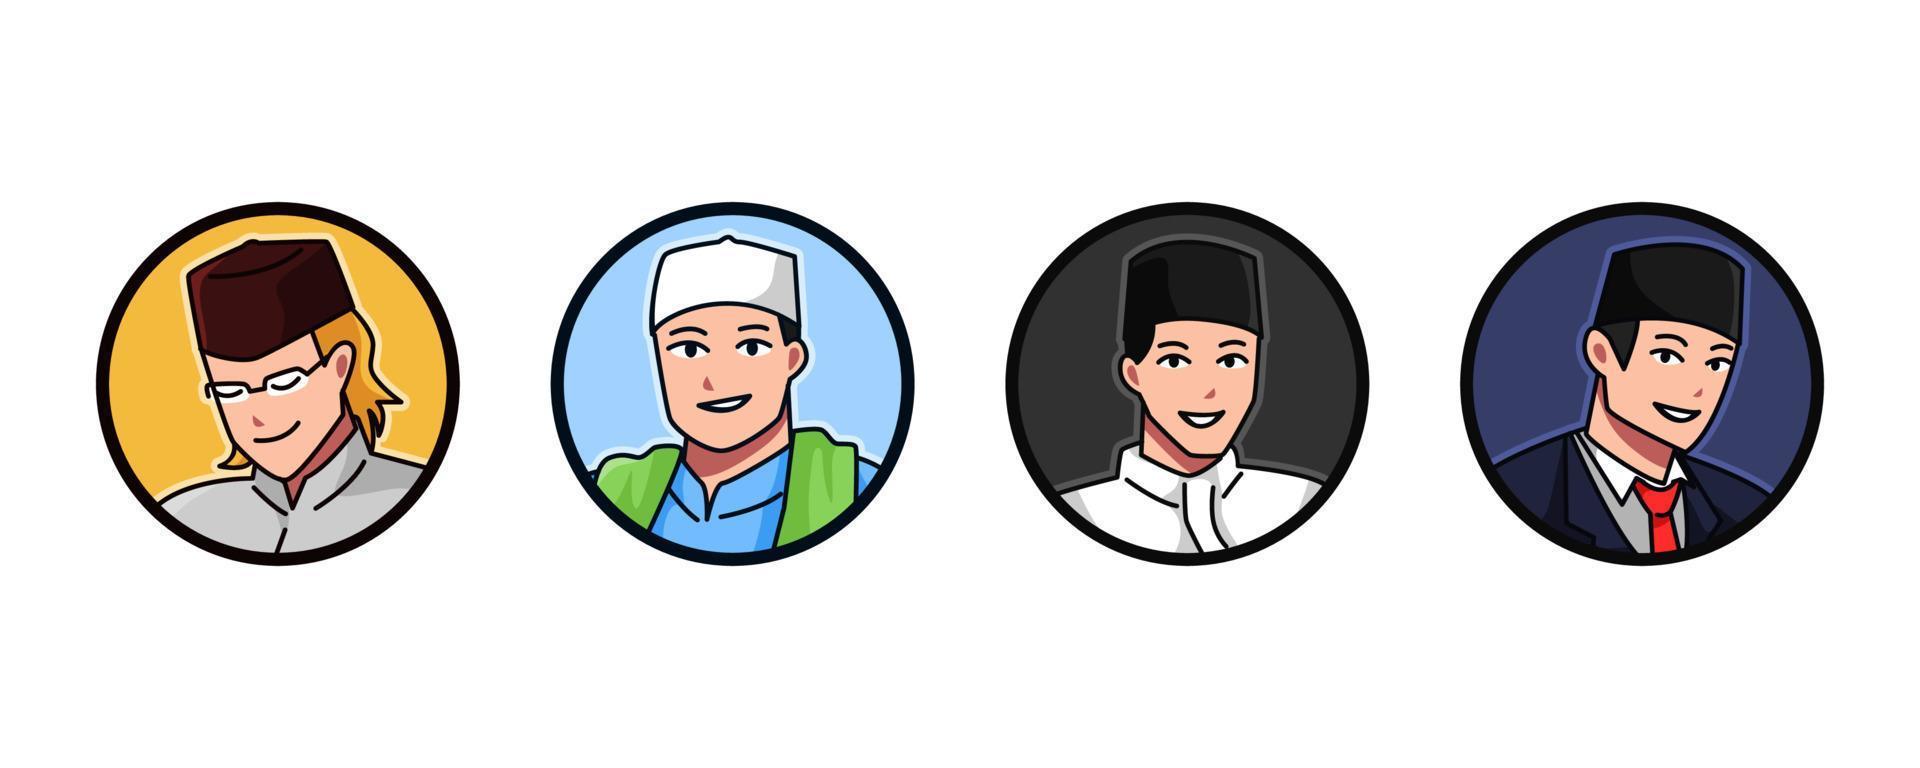 uppsättning avatar av en muslim manlig tecken bär en muslim keps, kopia, songkok. runda, cirkel ikon för social media, användare profil, hemsida, app. linje tecknad serie stil. vektor illustration.